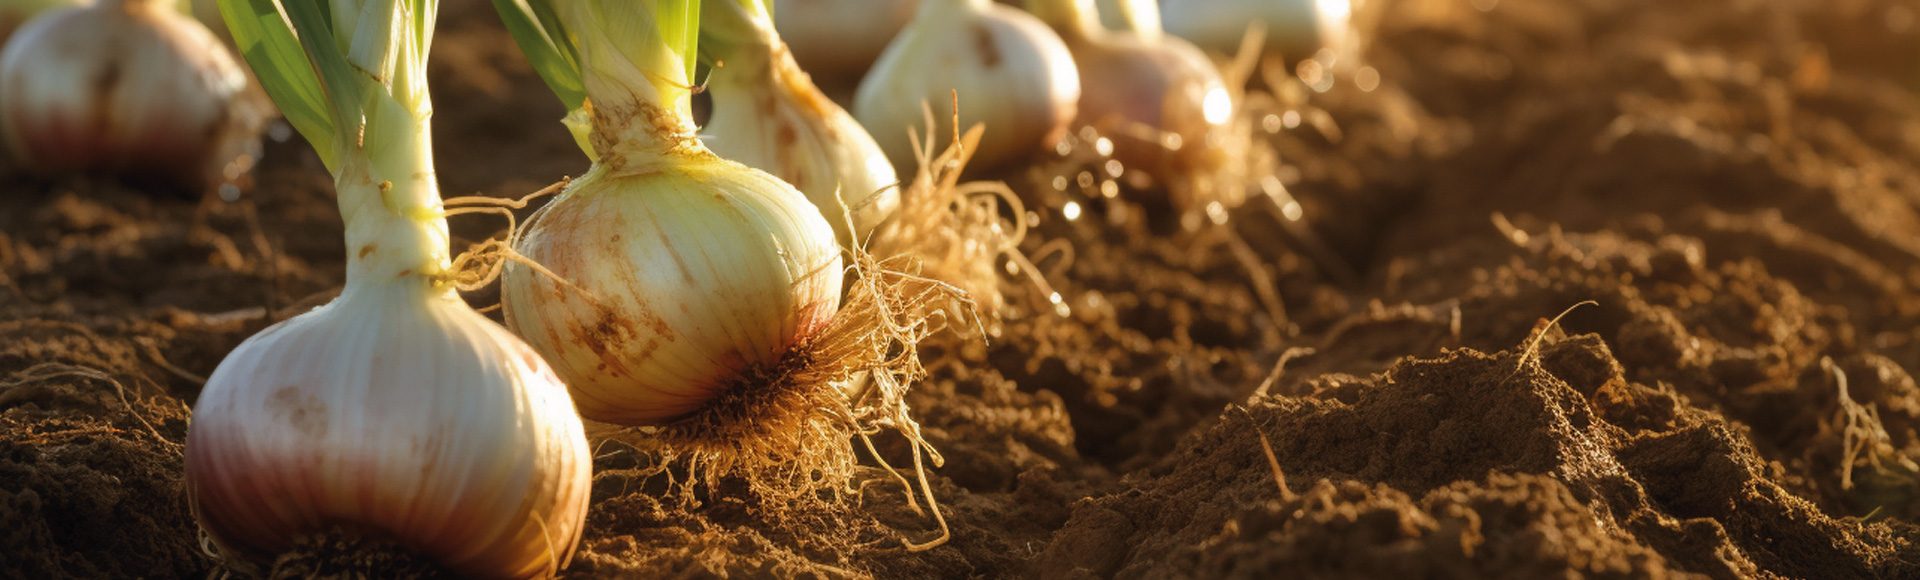 onion and leek fertiliser